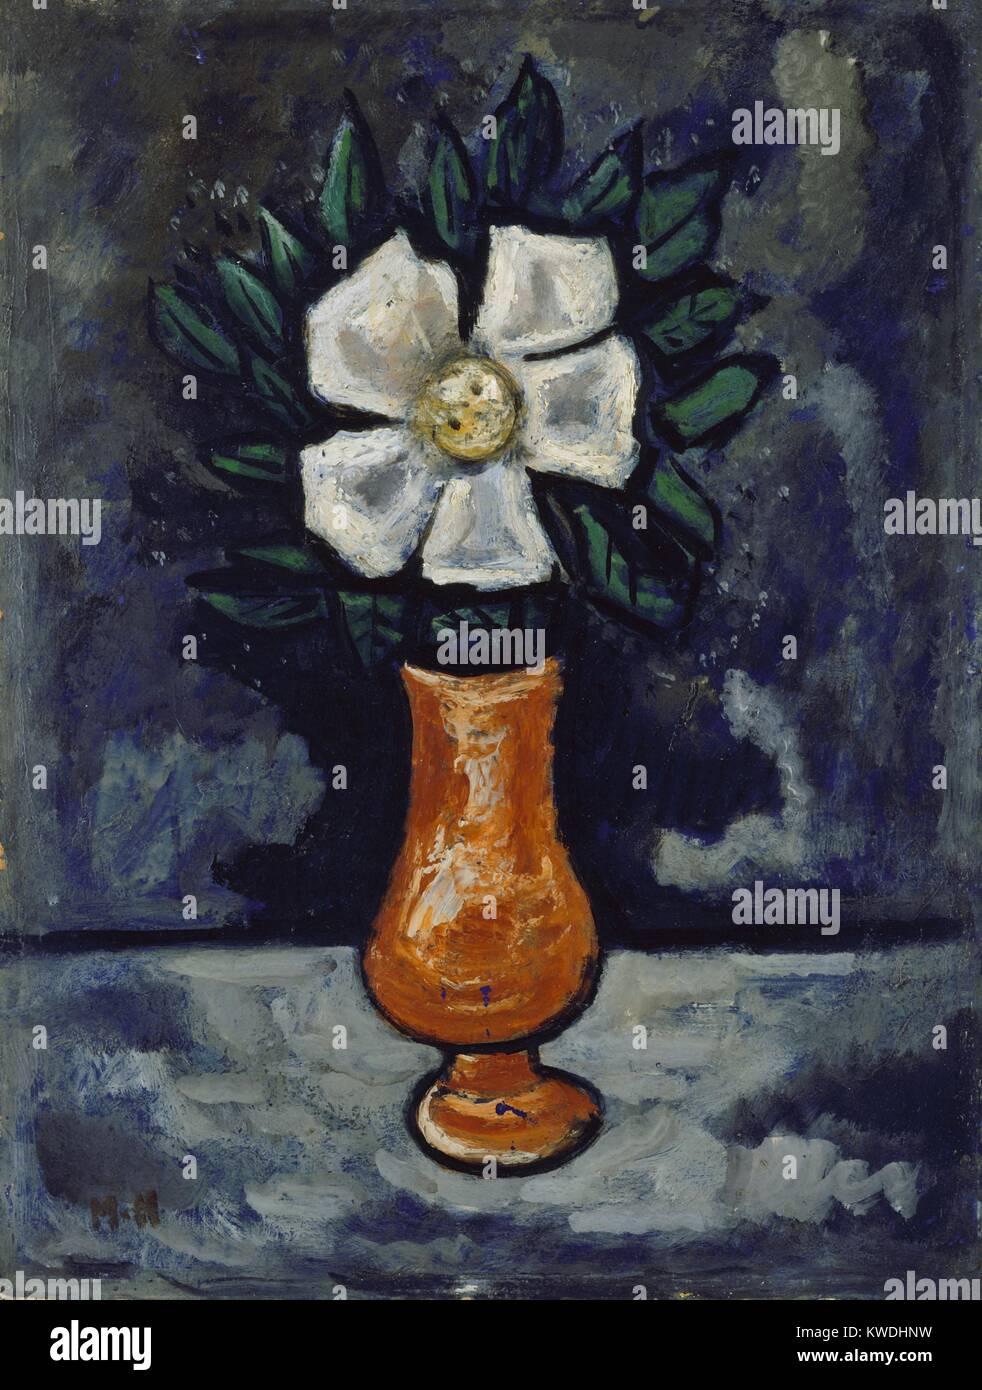 Fleur blanche, par Marsden Hartley, c. 1917, American peinture, huile sur bois. La vie toujours peint en Hartleys synthèse personnelle du Cubisme et l'Expressionnisme Allemand (BSLOC 2017 7 105) Banque D'Images